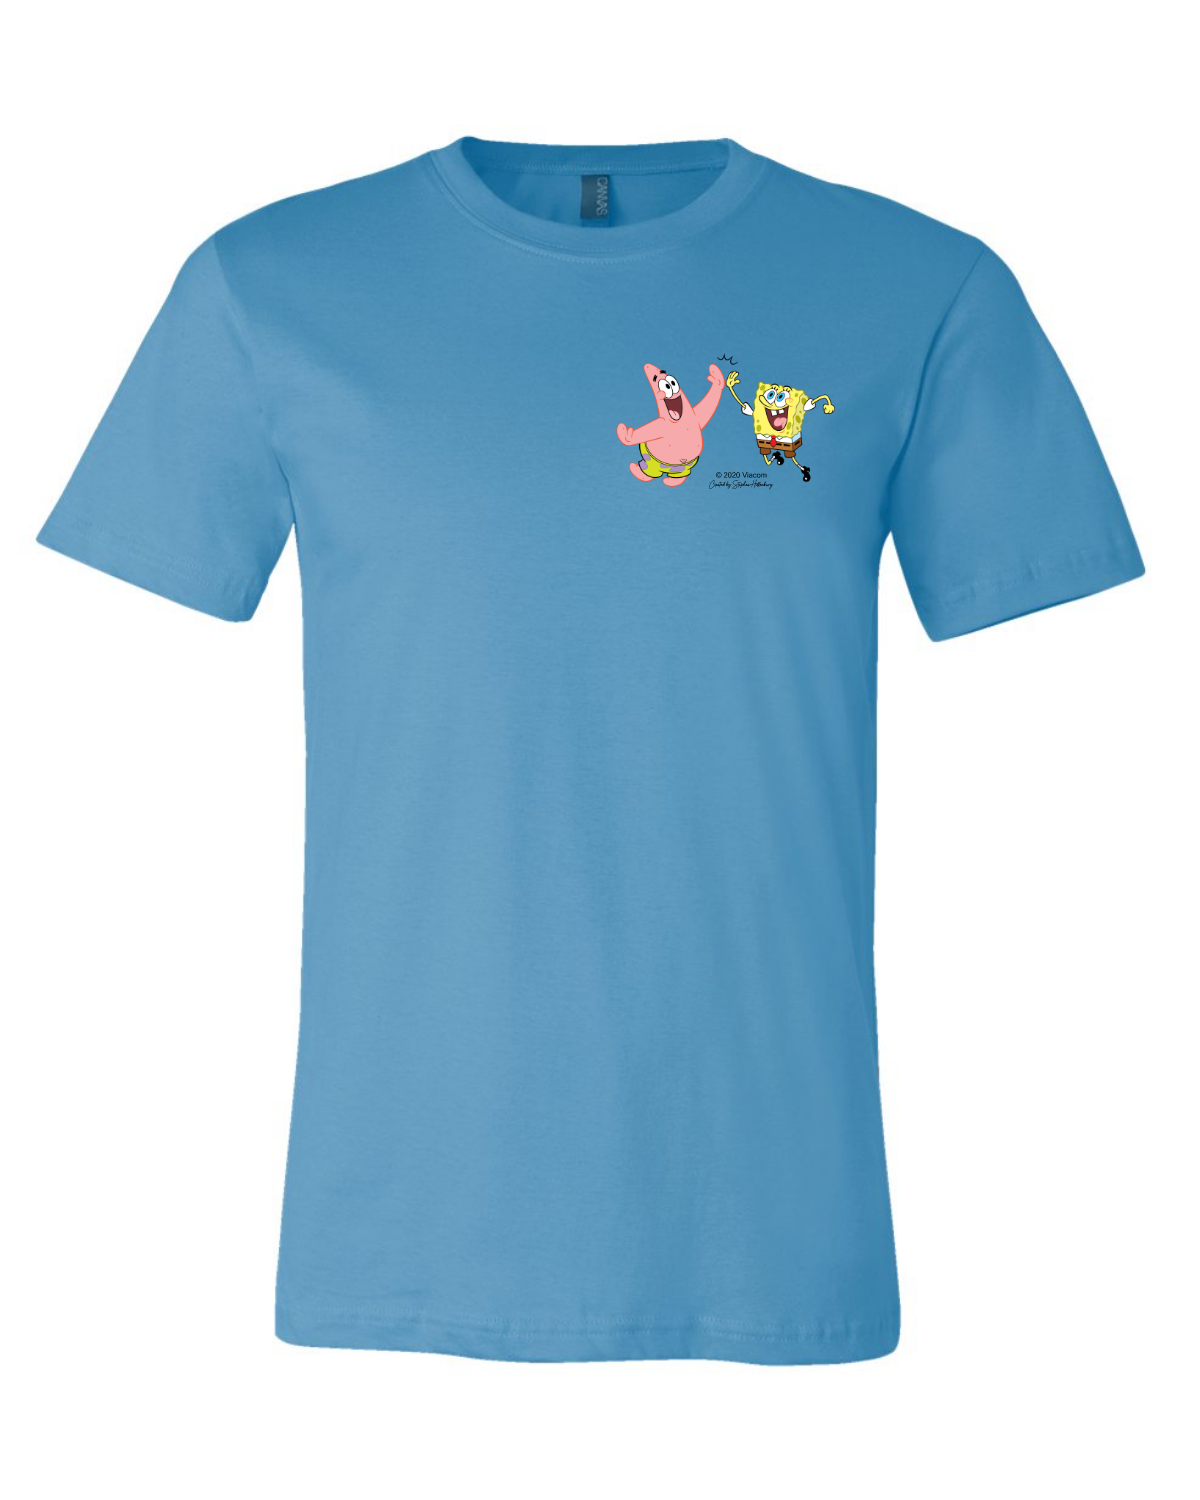 Spongebob Schwammkopf Do Stuff Together Pastell Kurzarm-T-Shirt